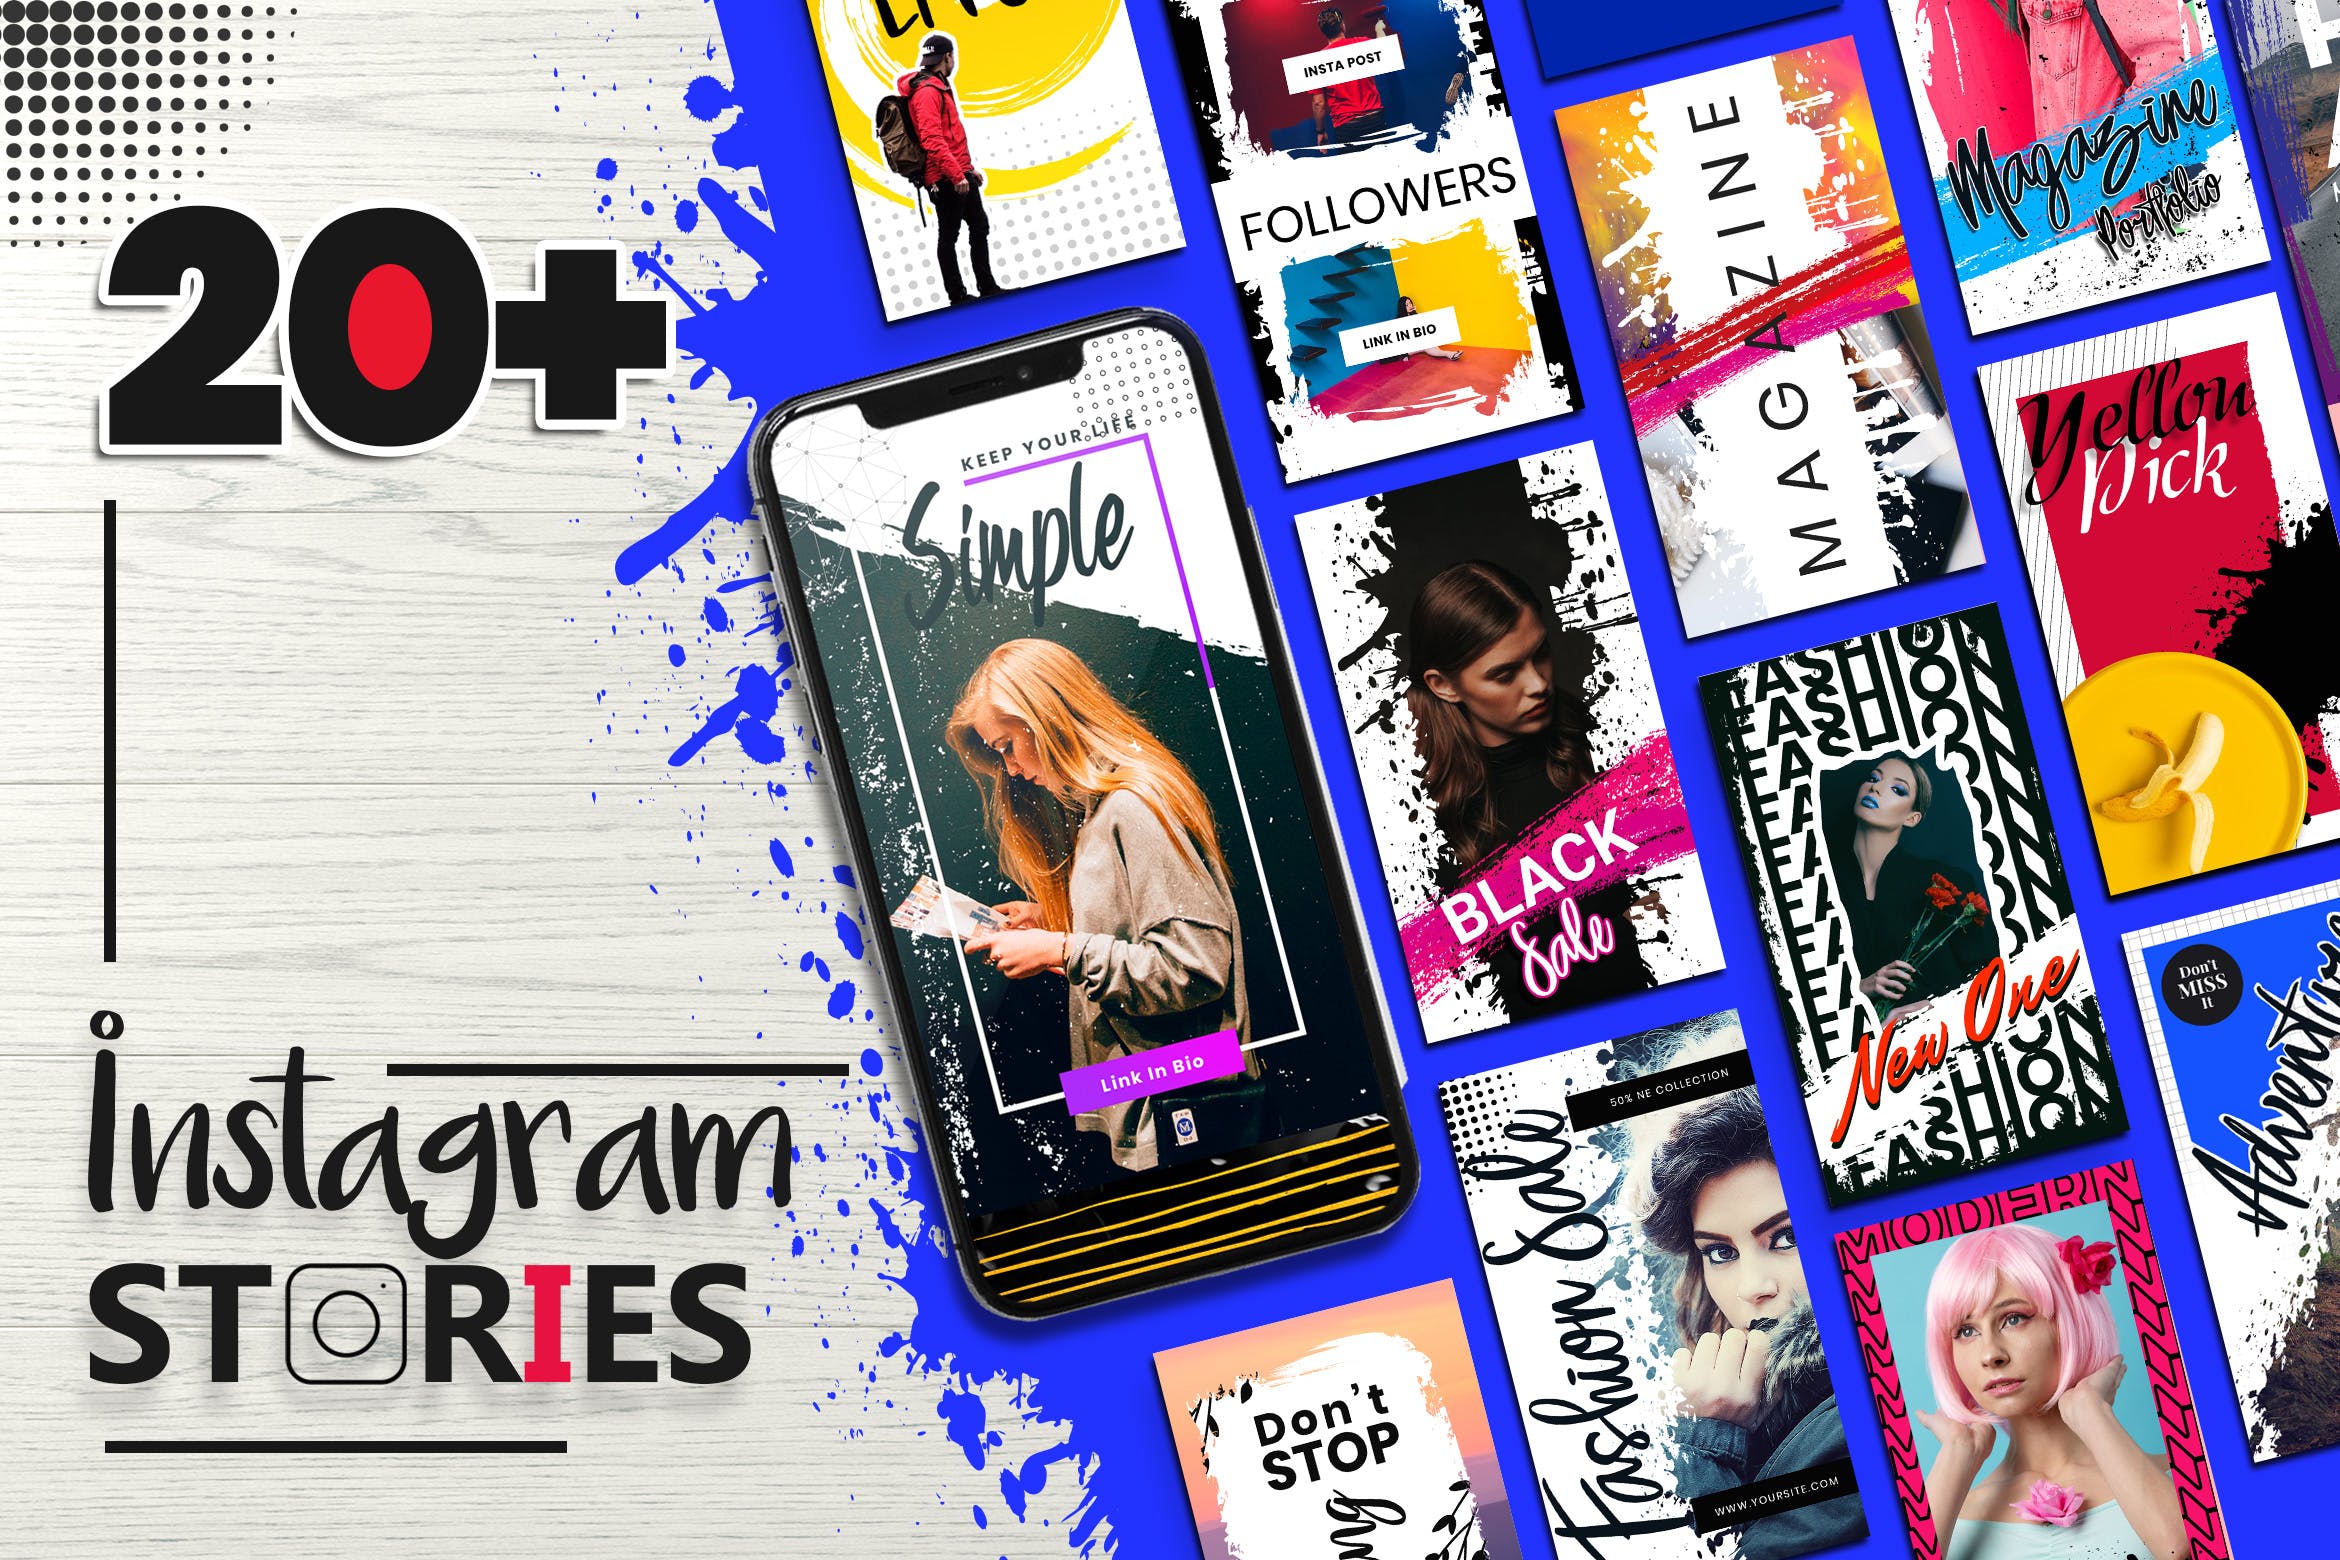 20+笔刷纹理设计风格Instagram社交品牌故事设计模板蚂蚁素材精选 Instagram Stories Template插图